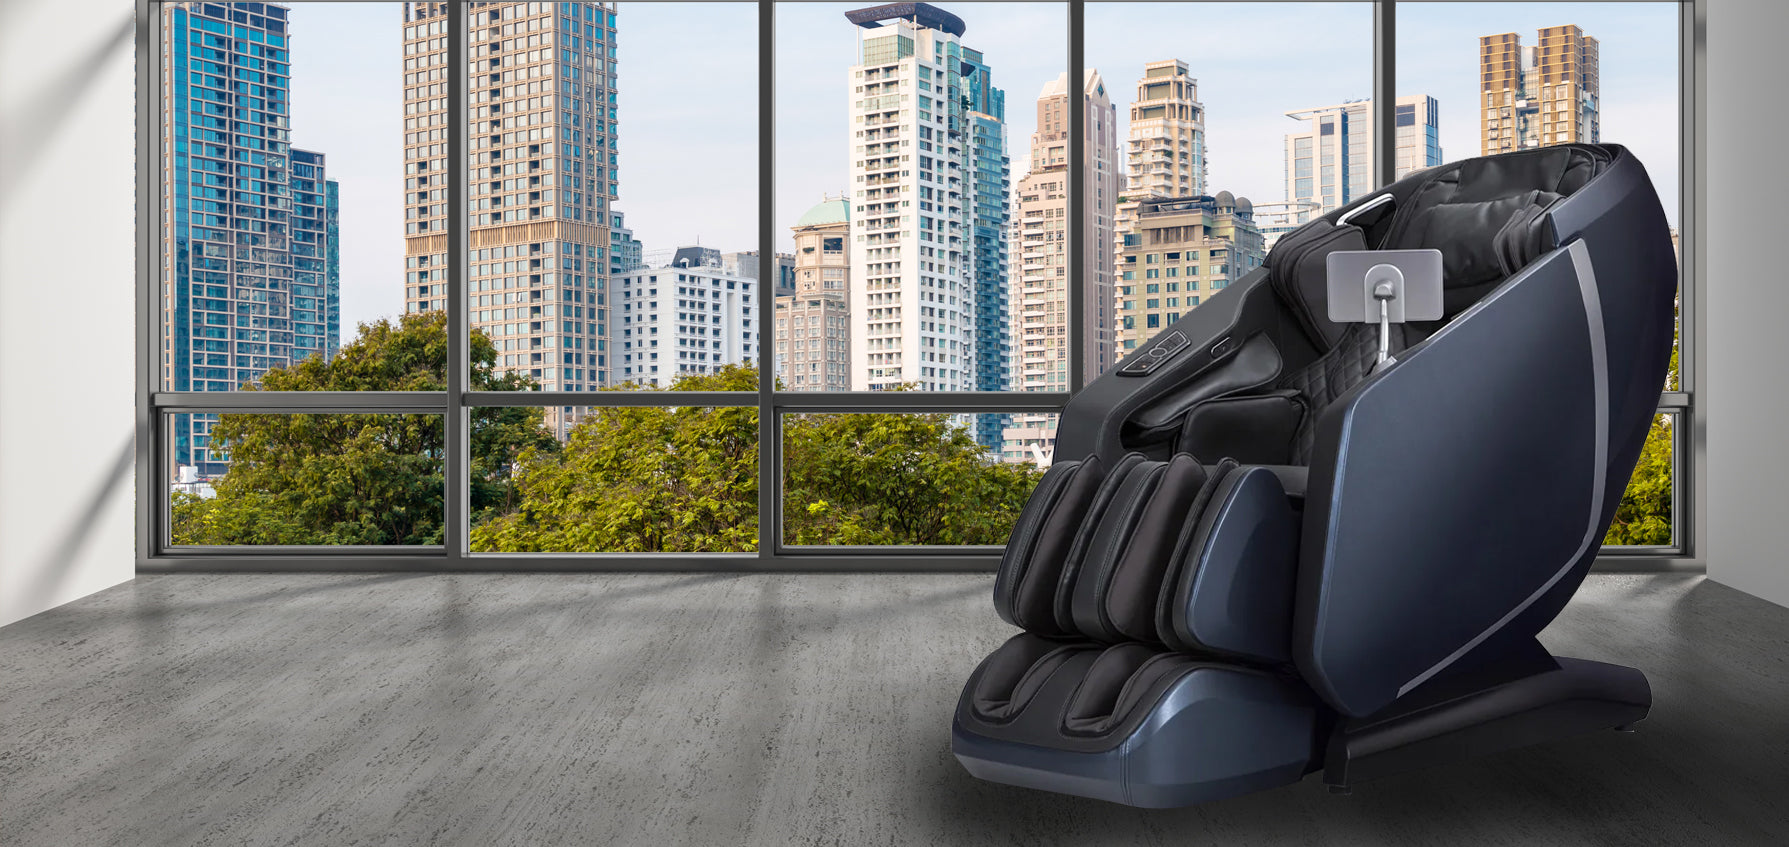 Osaki OS-Highpointe 4D Massage Chair